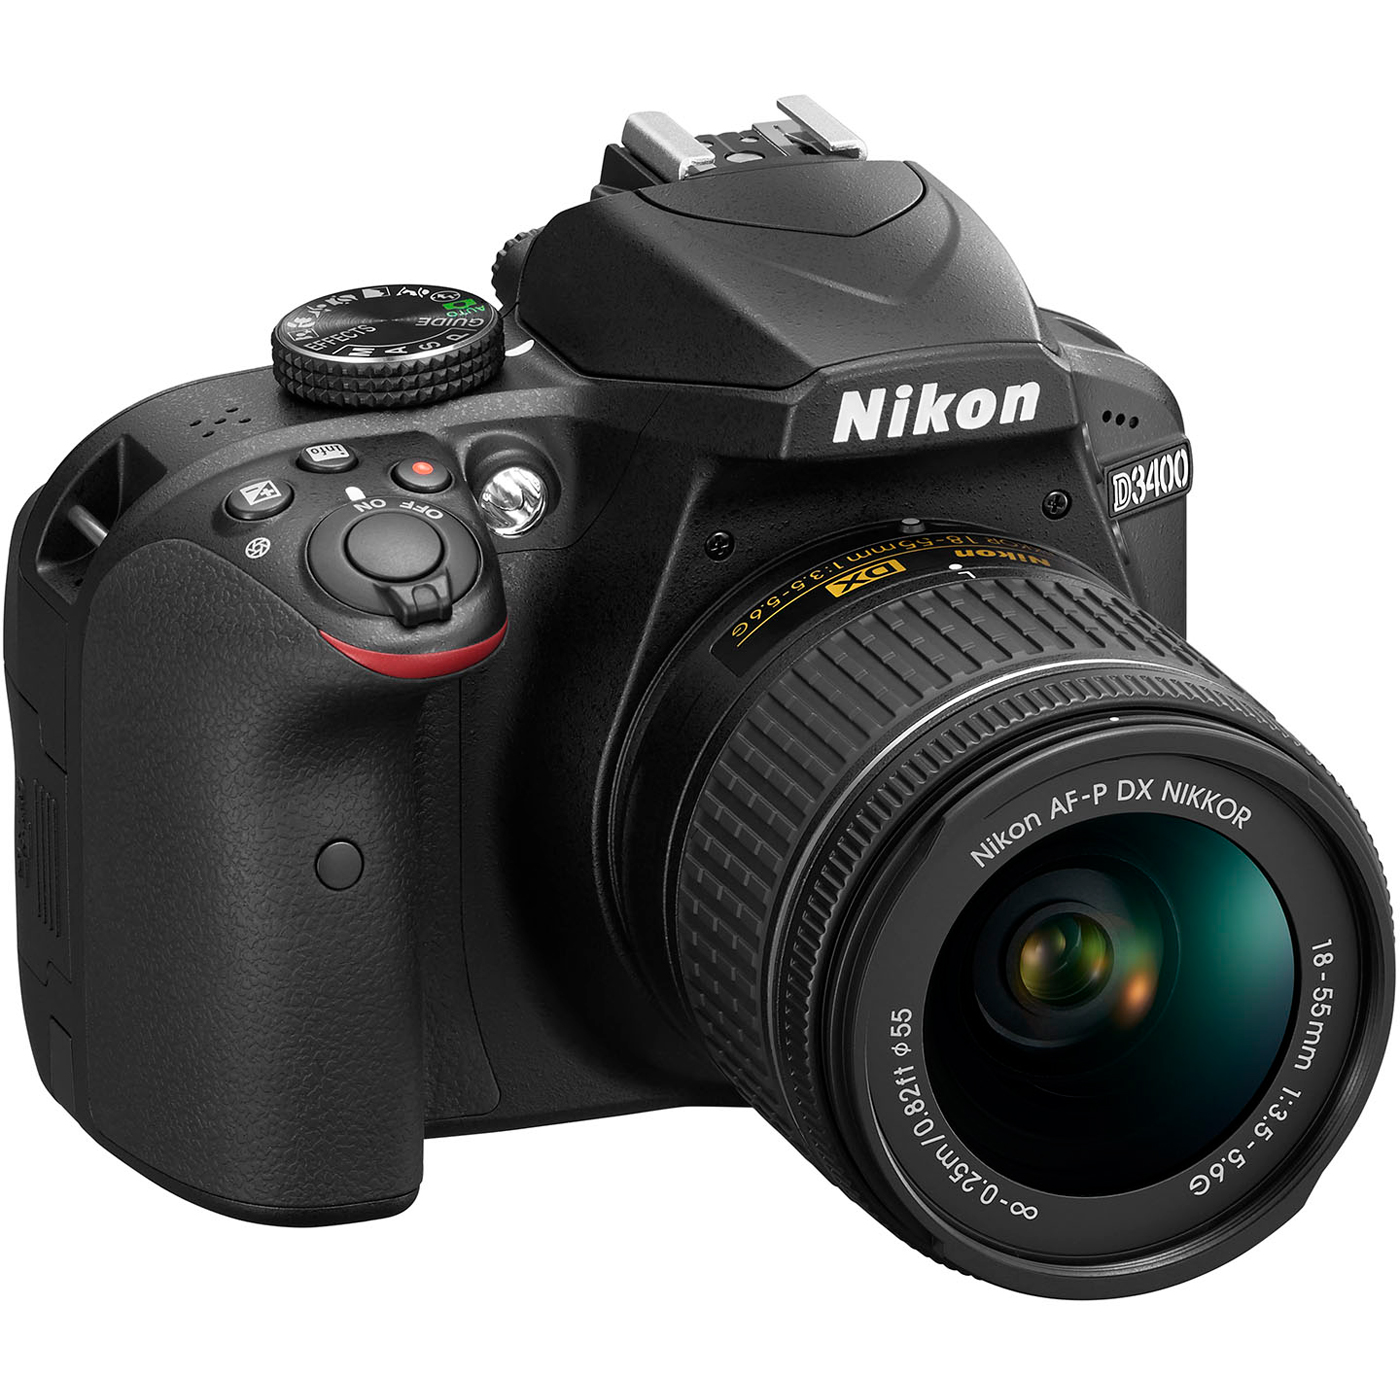 Nikon D3400/D3500 DSLR Camera with 18:55mm Lens (Black) & Sigma 70:300mm SLD DG Lens Package, Black Bundle 64GB SDXC Memory Card Supreme Bundle - image 10 of 10